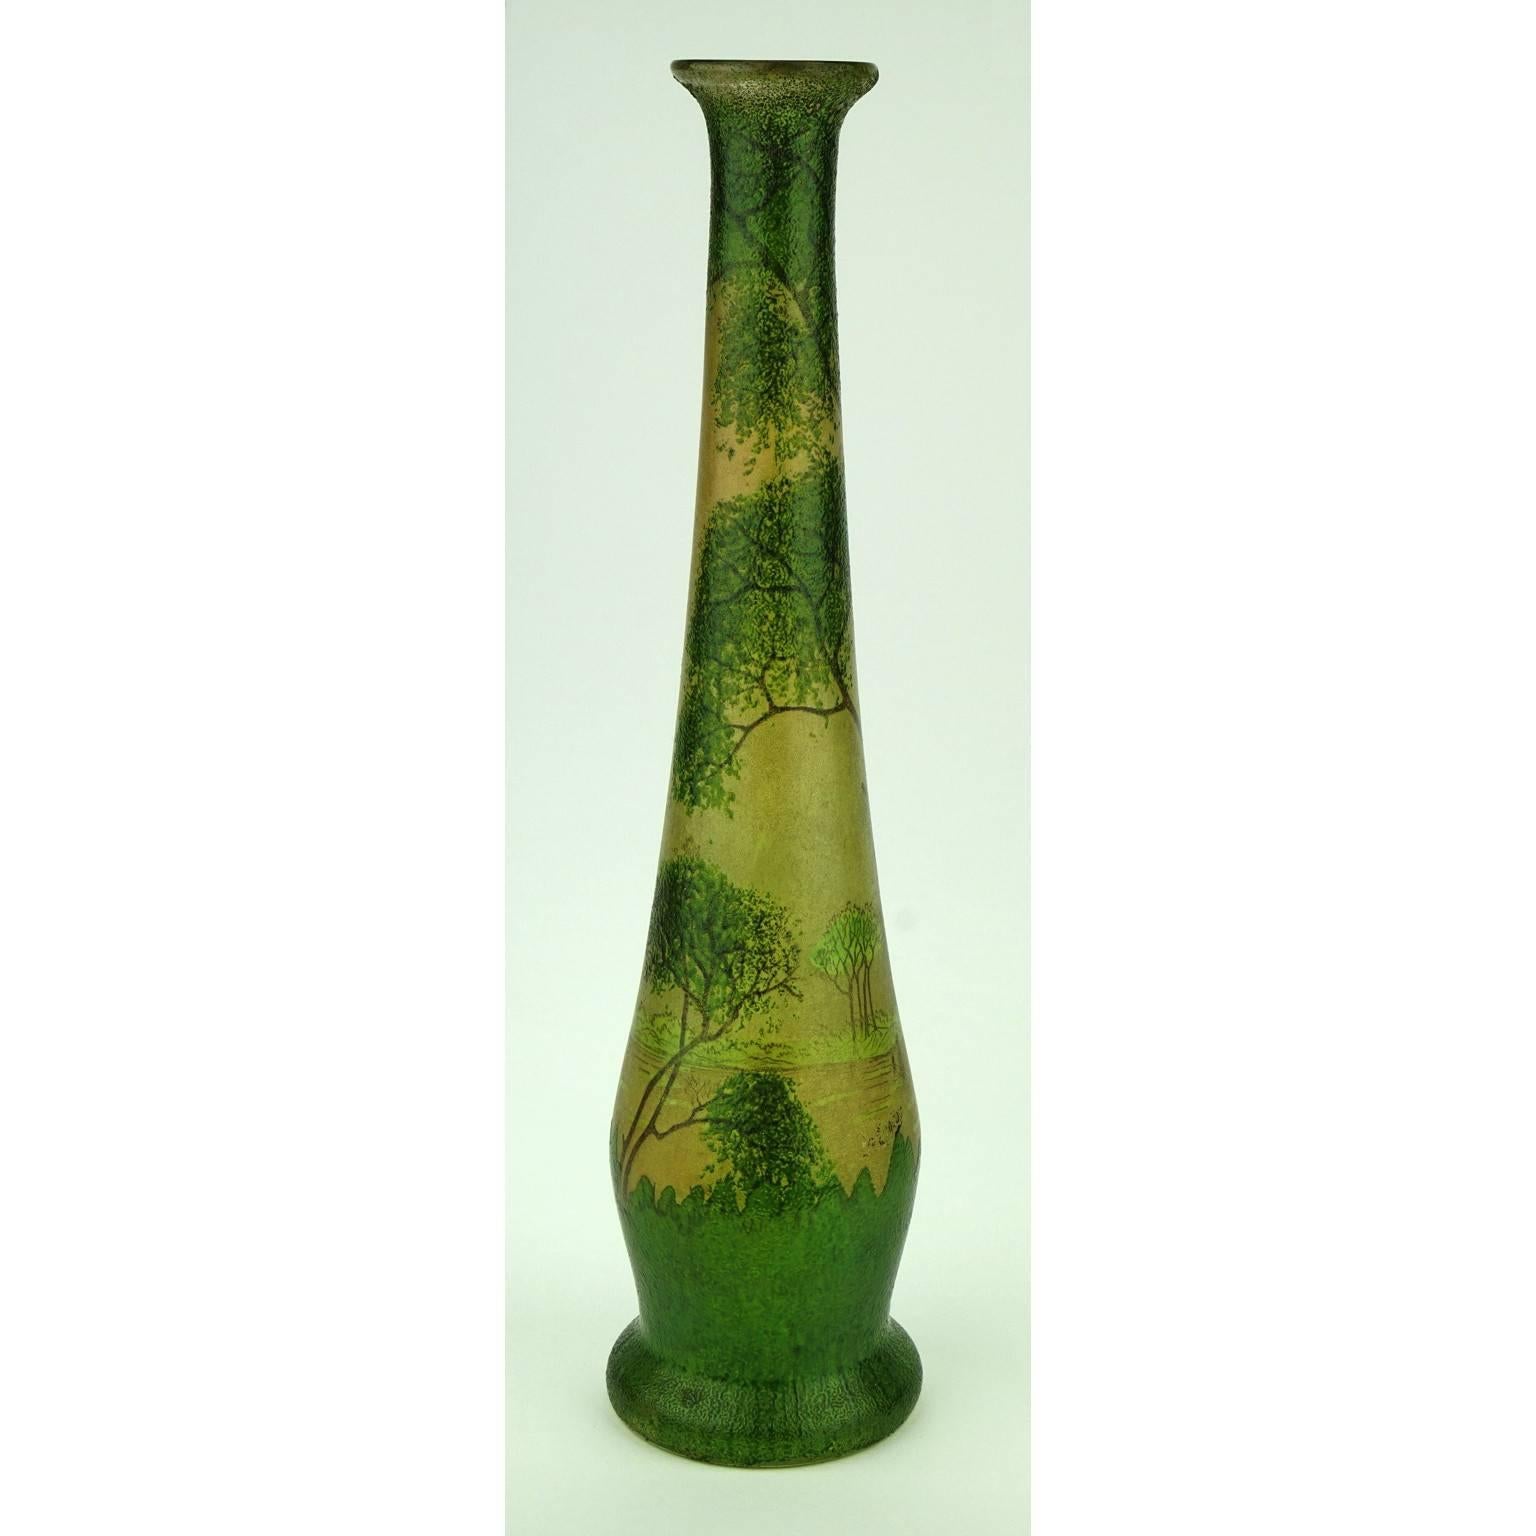 Art Glass Art Nouveau Long-Necked Legras Vase